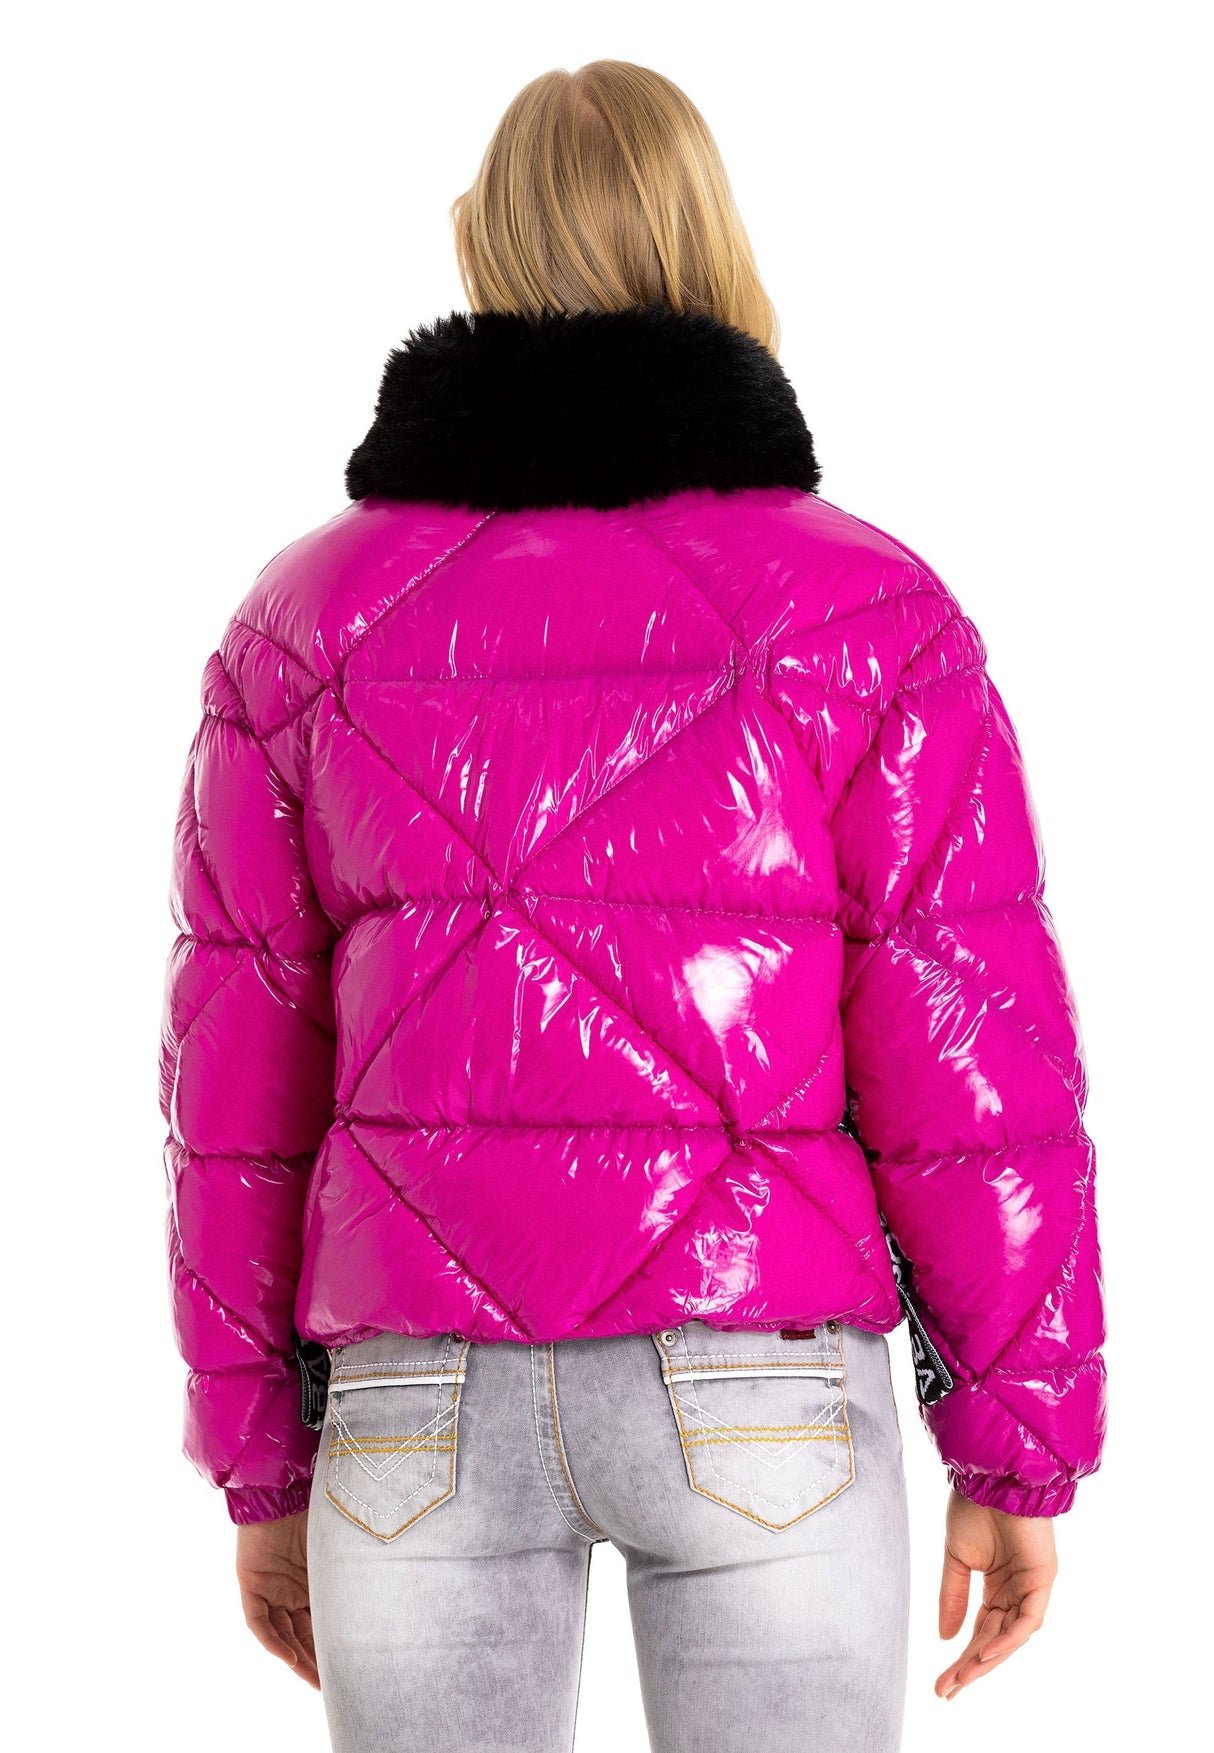 WM134 Veste d'hiver pour femmes avec col en fourrure synthétique